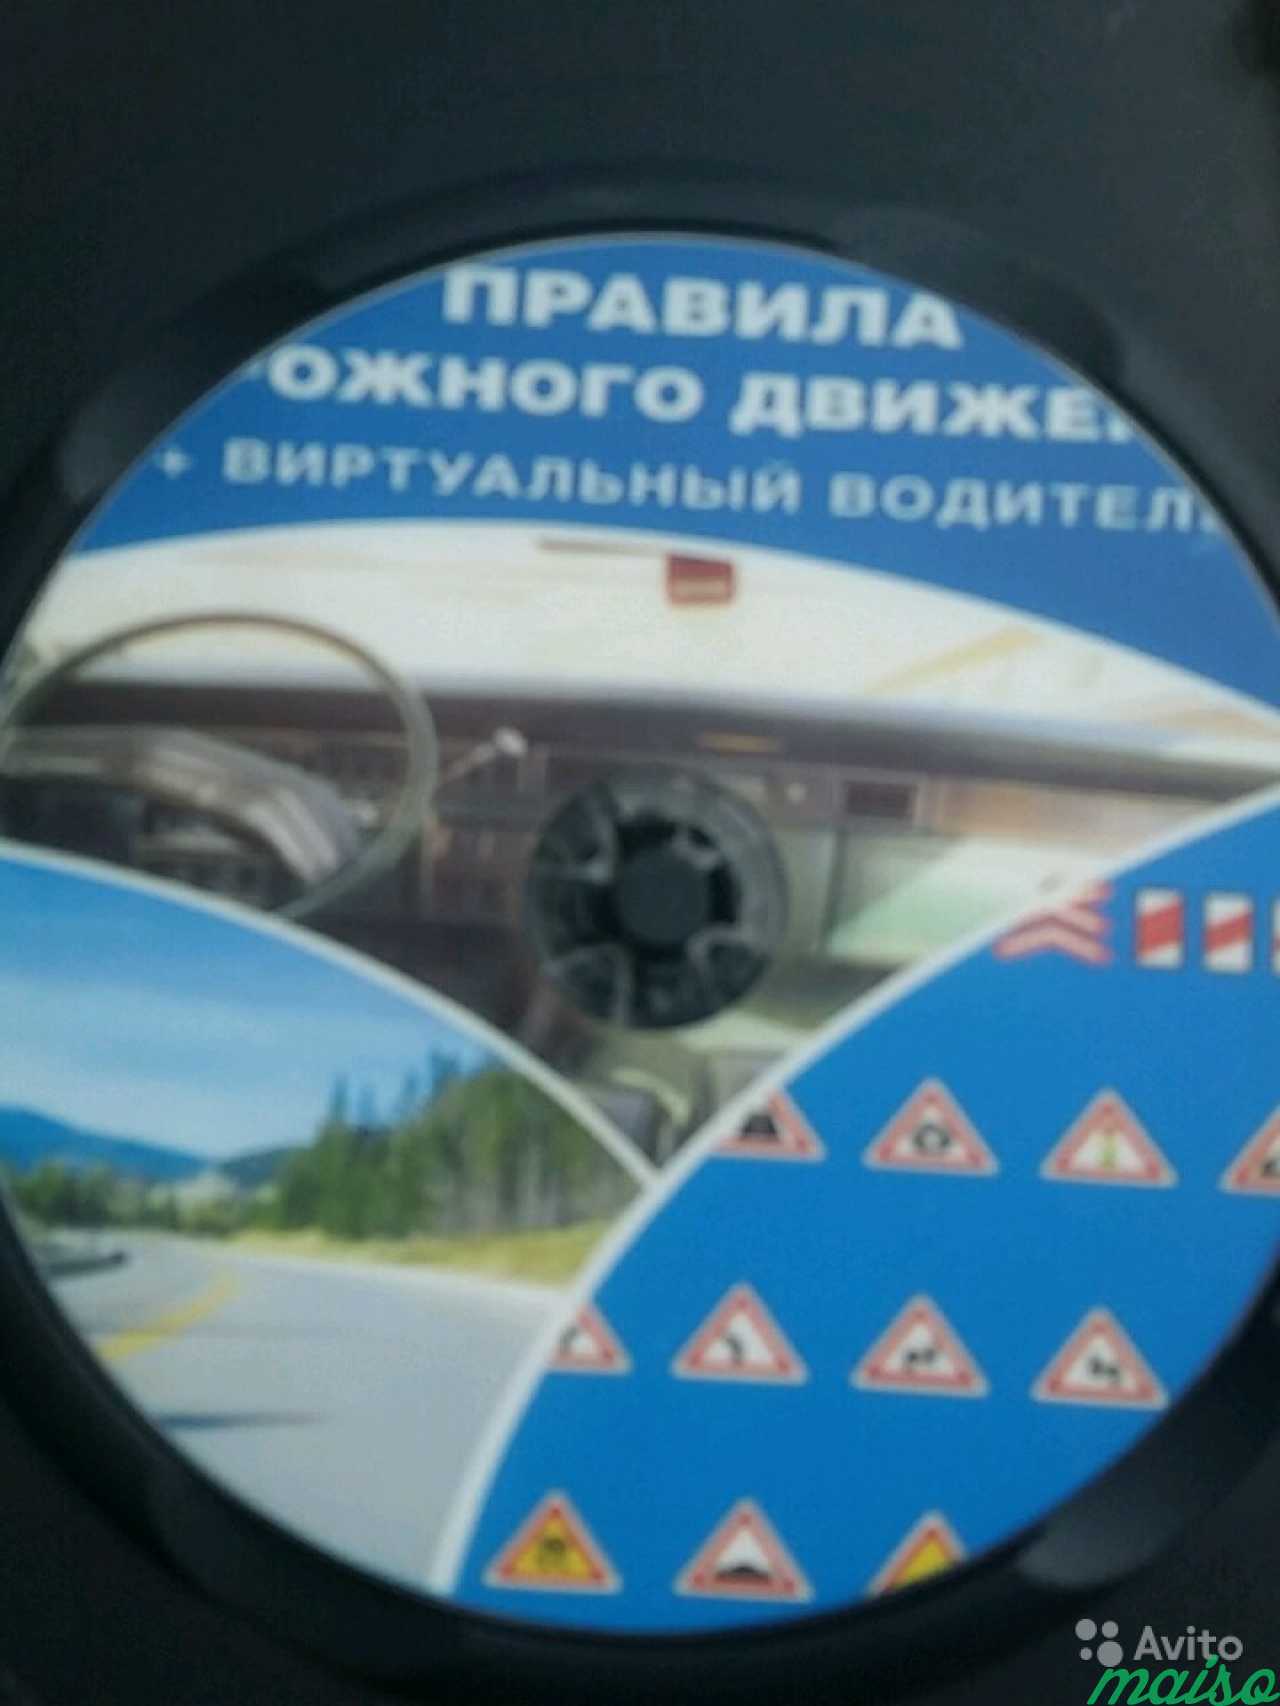 DVD-ROM вертуальный водитель в Санкт-Петербурге. Фото 2